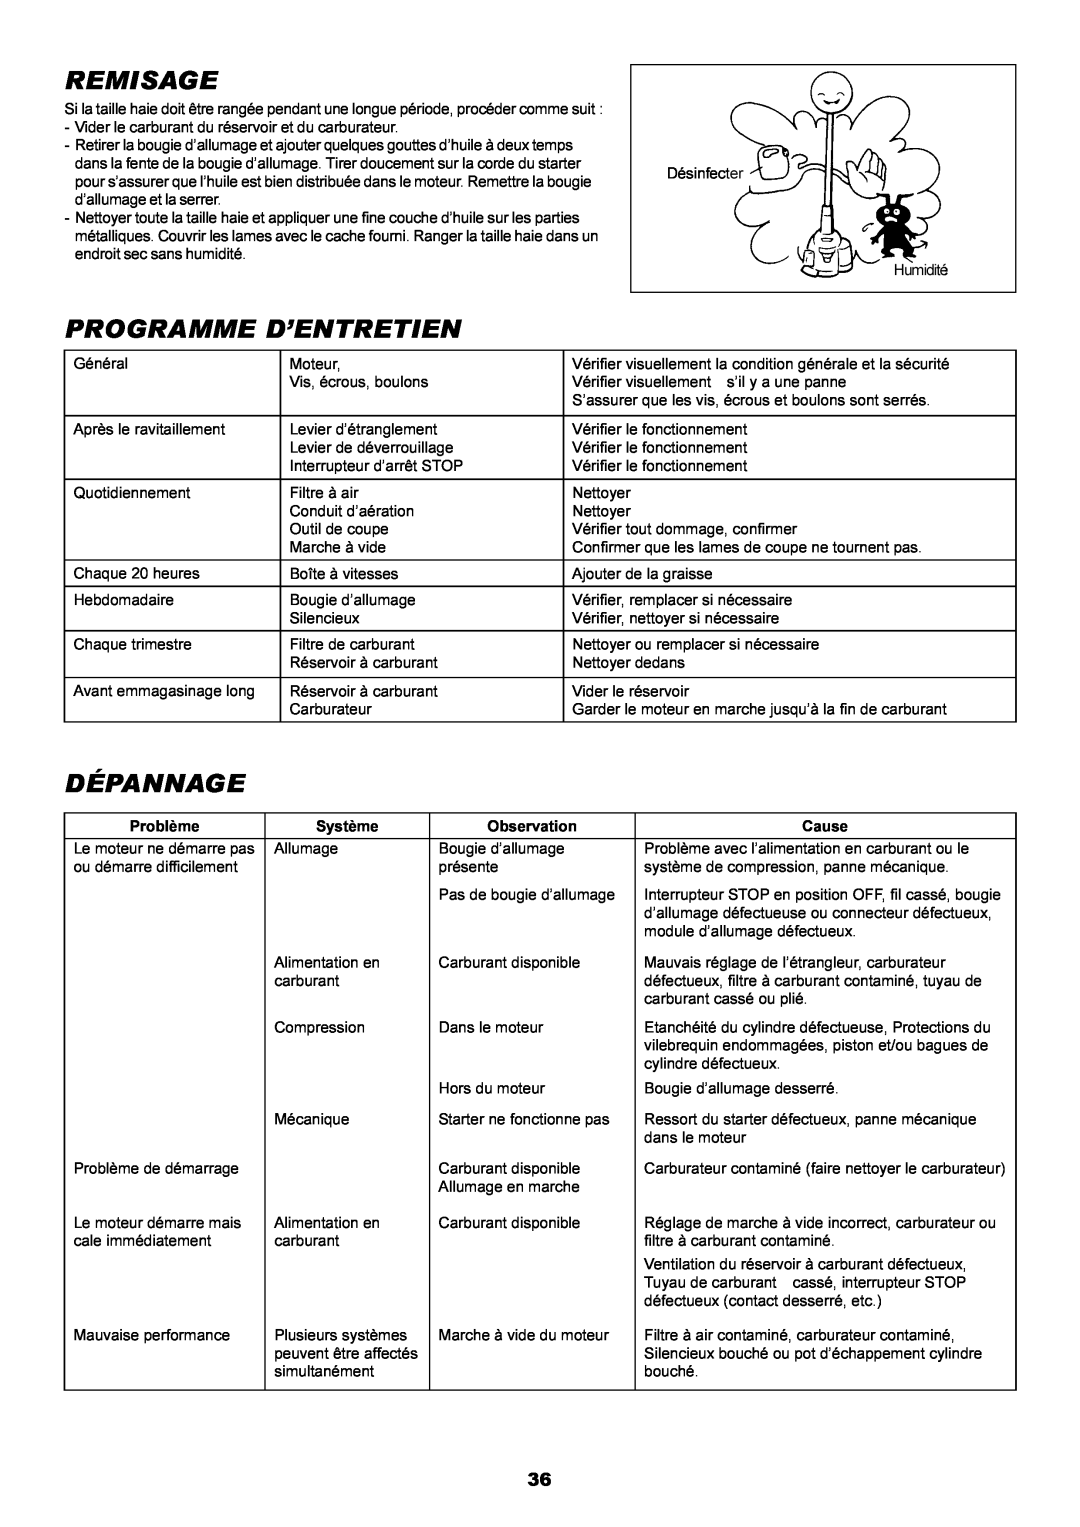 Dolmar MH-2556 instruction manual Remisage, Programme D’Entretien, Dépannage 